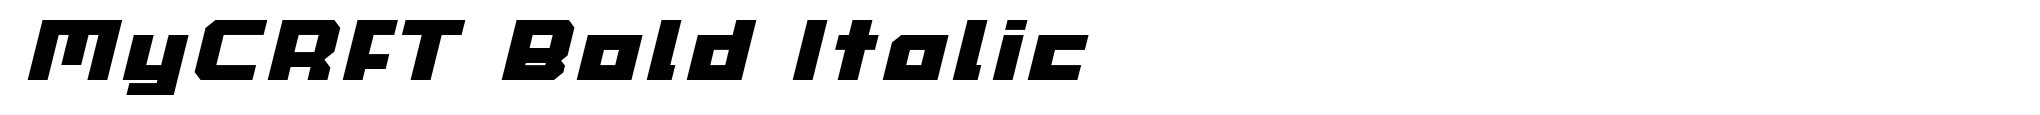 MyCRFT Bold Italic image